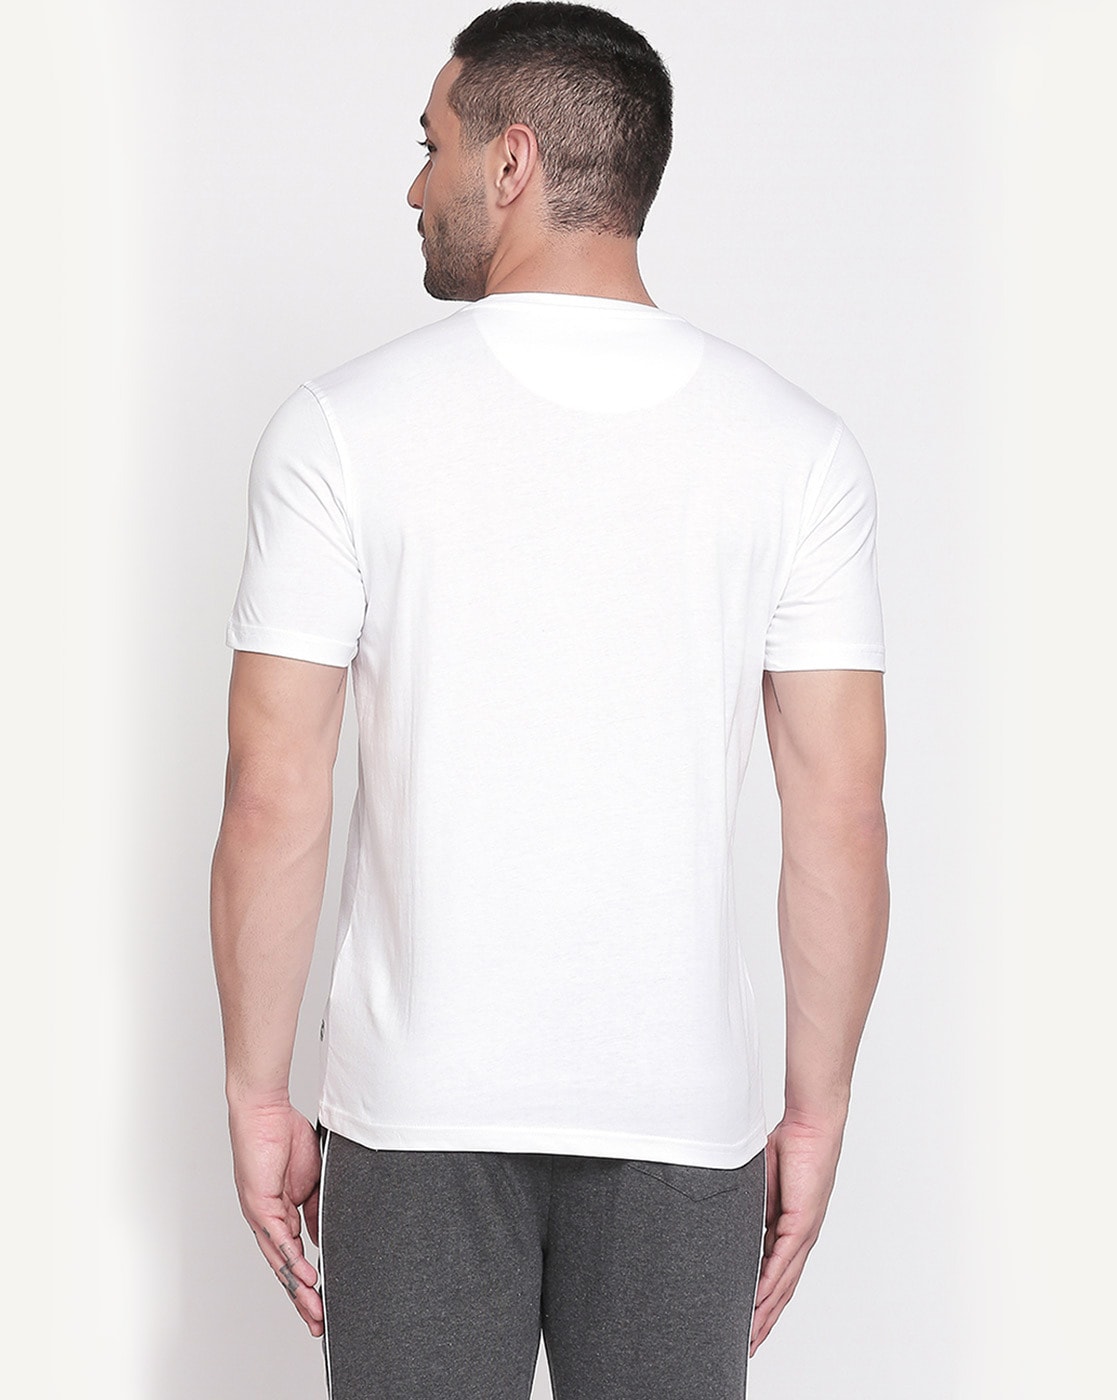 Pantaloons White T-Shirt - Selling Fast at